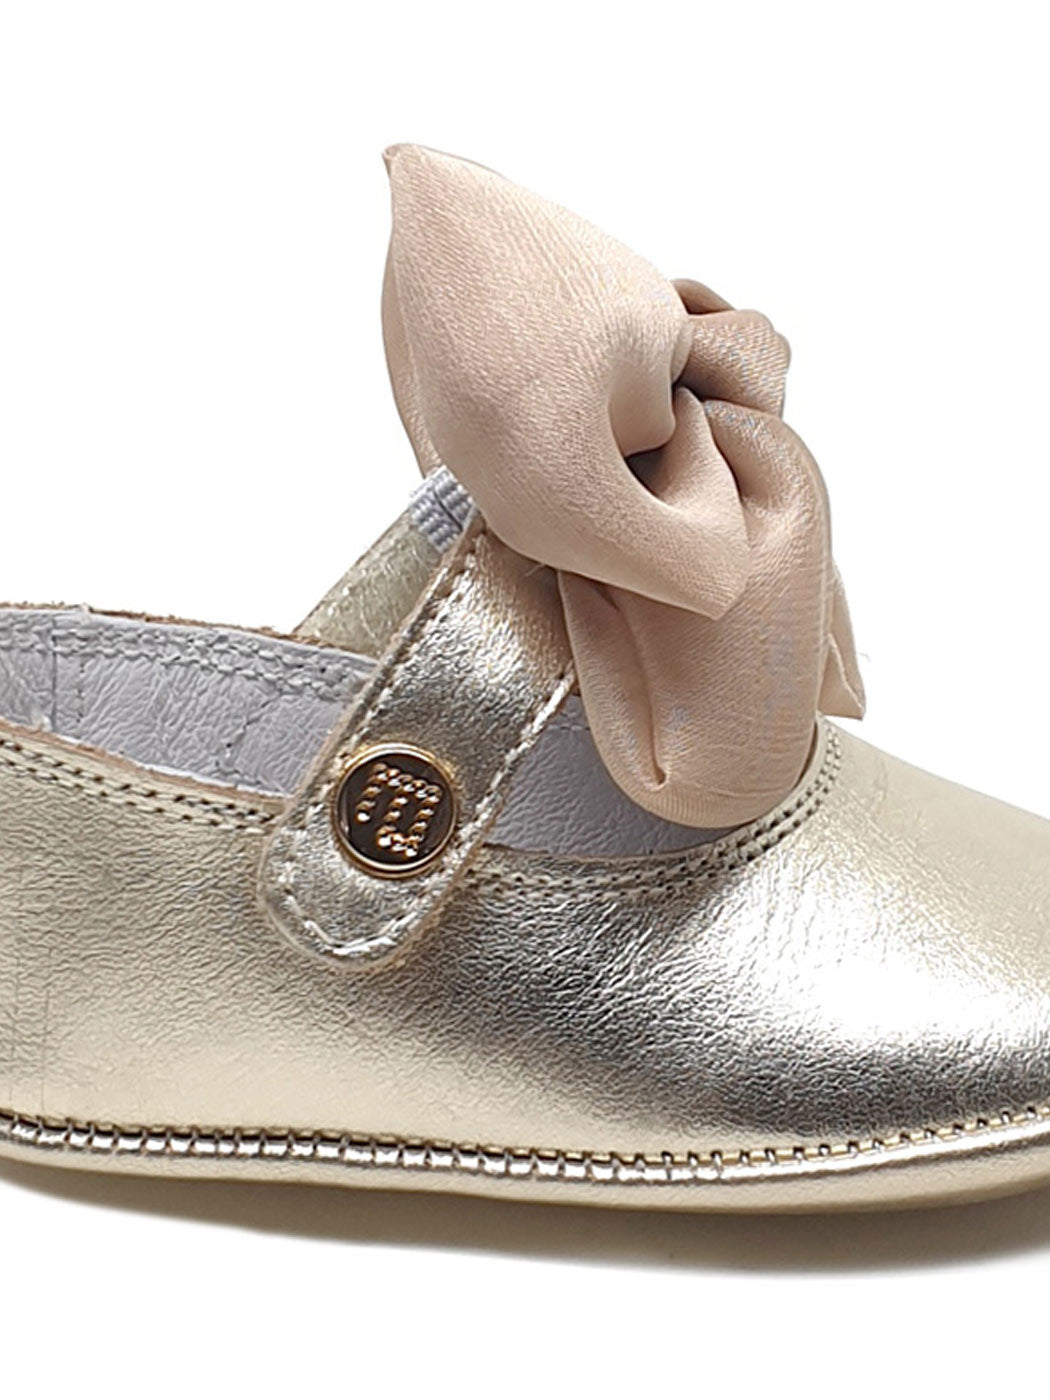 Δερμάτινα Παπούτσια Αγκαλιάς με Φιόγκο-1902-3